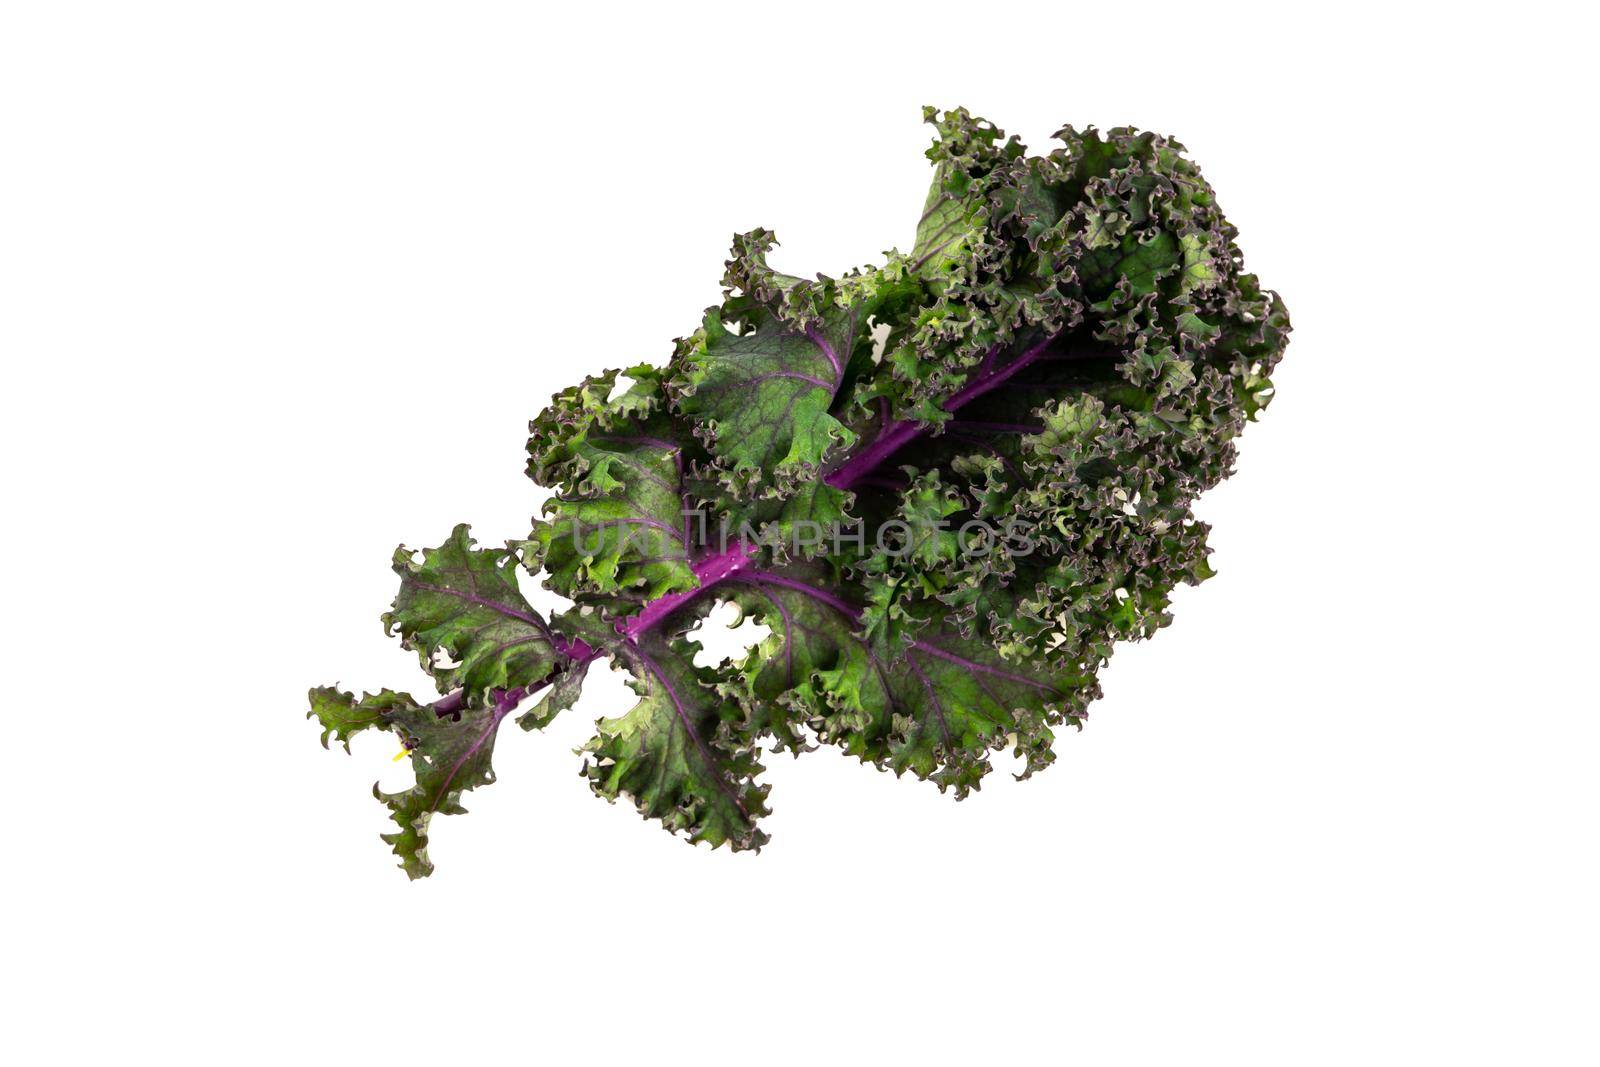 green leafy kale by Sonat